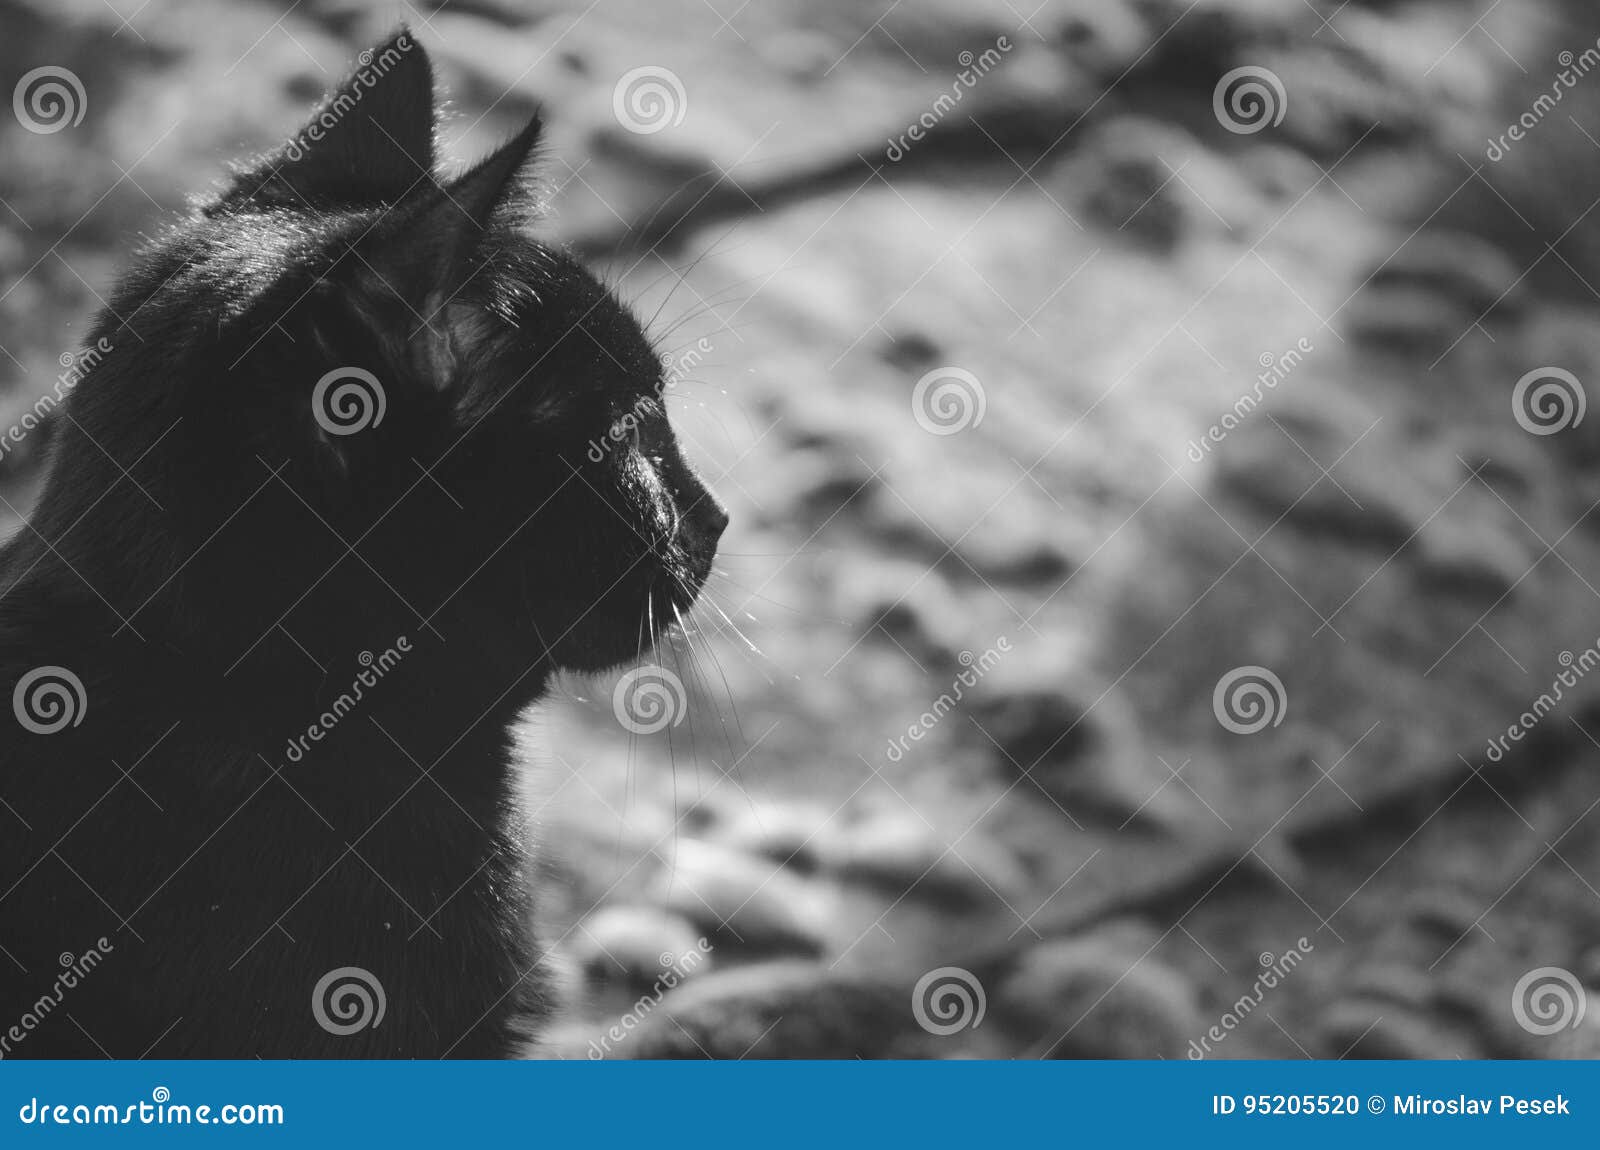 Профиль черных котов стоковое фото. изображение насчитывающей одно -  95205520